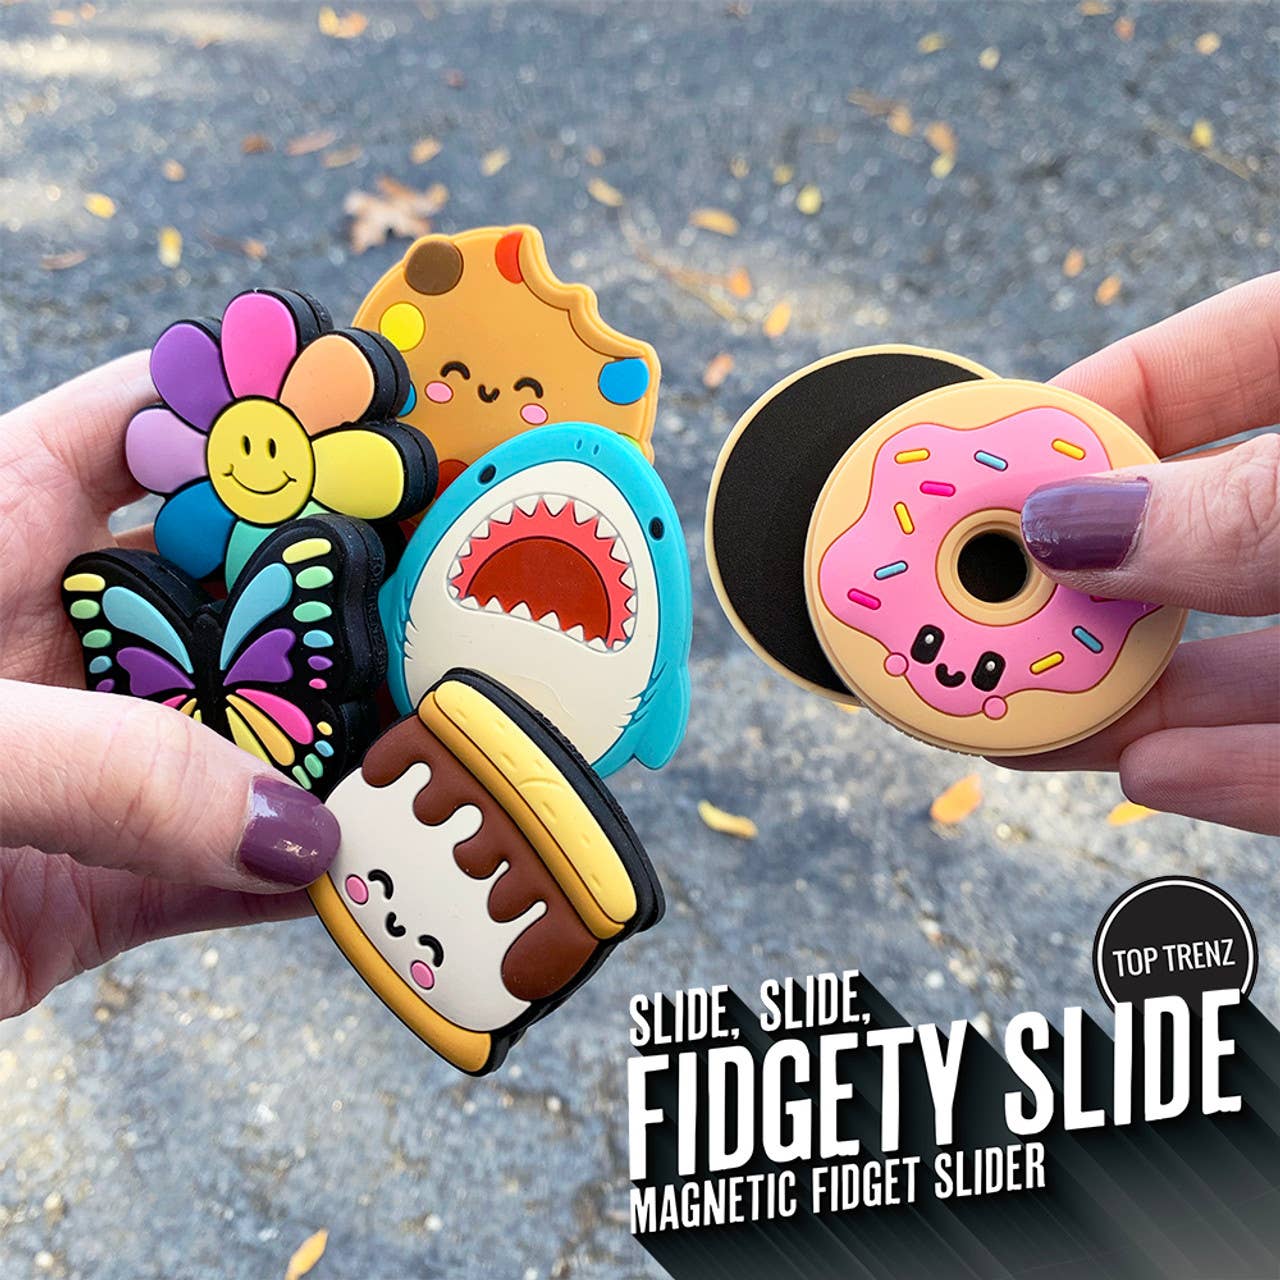 Fidgety Slide -  Magnet Fidget Slider